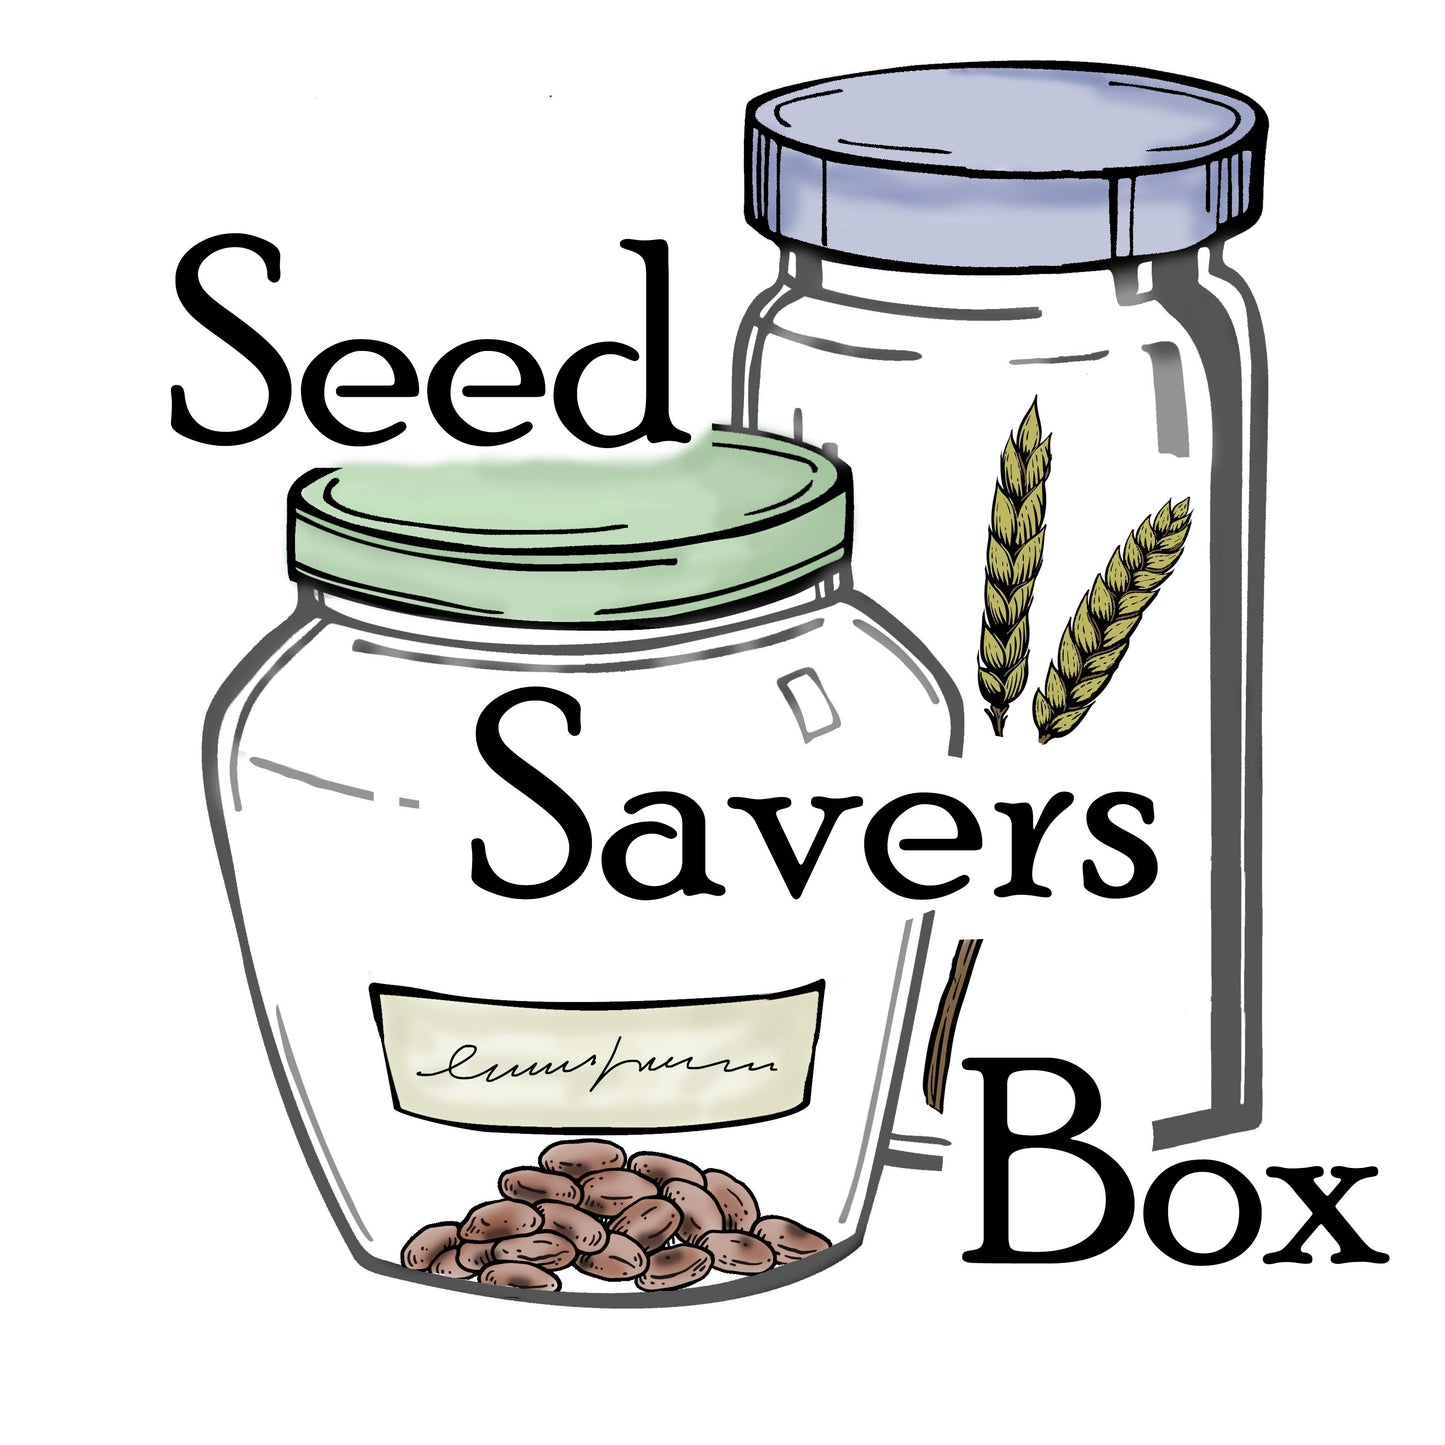 Seed Savers Box